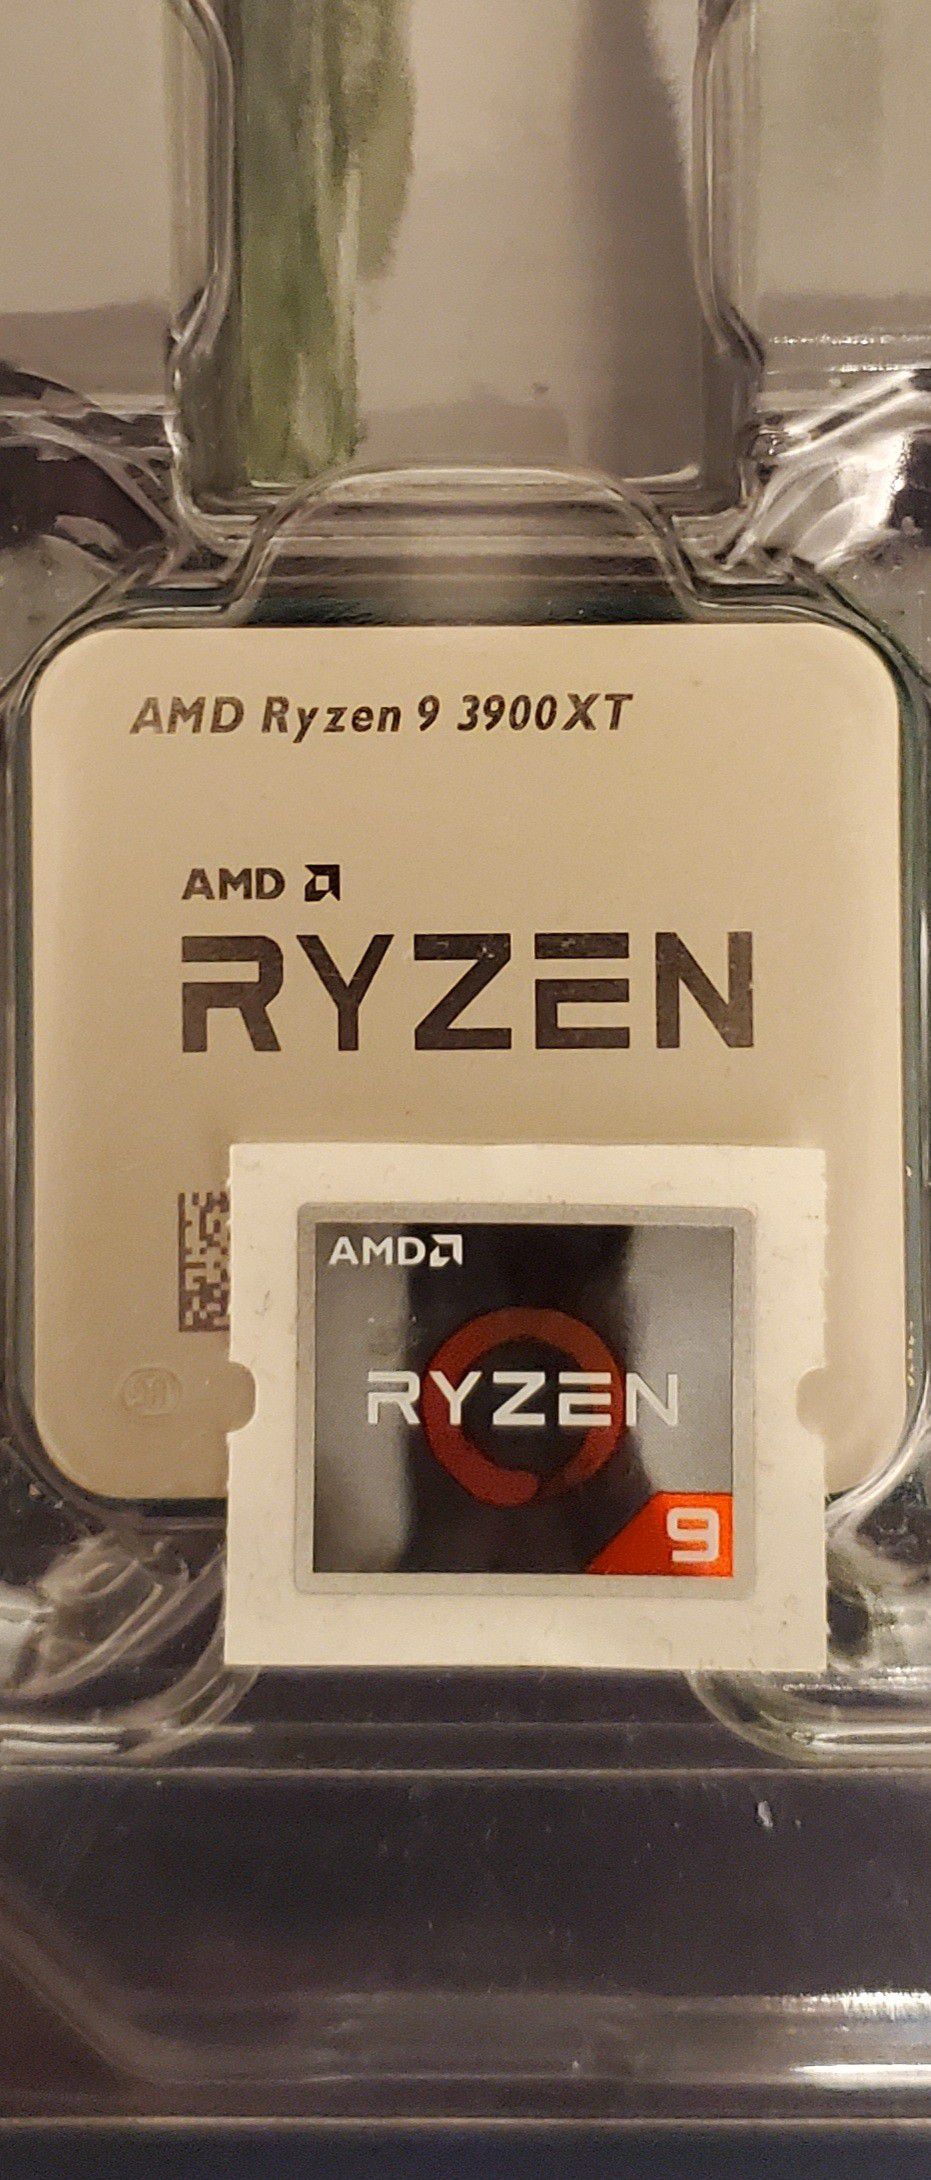 NEW AMD Ryzen 9 3900XT 12 Core Socket AM4 105W 100-100000277WOF Desktop Processor